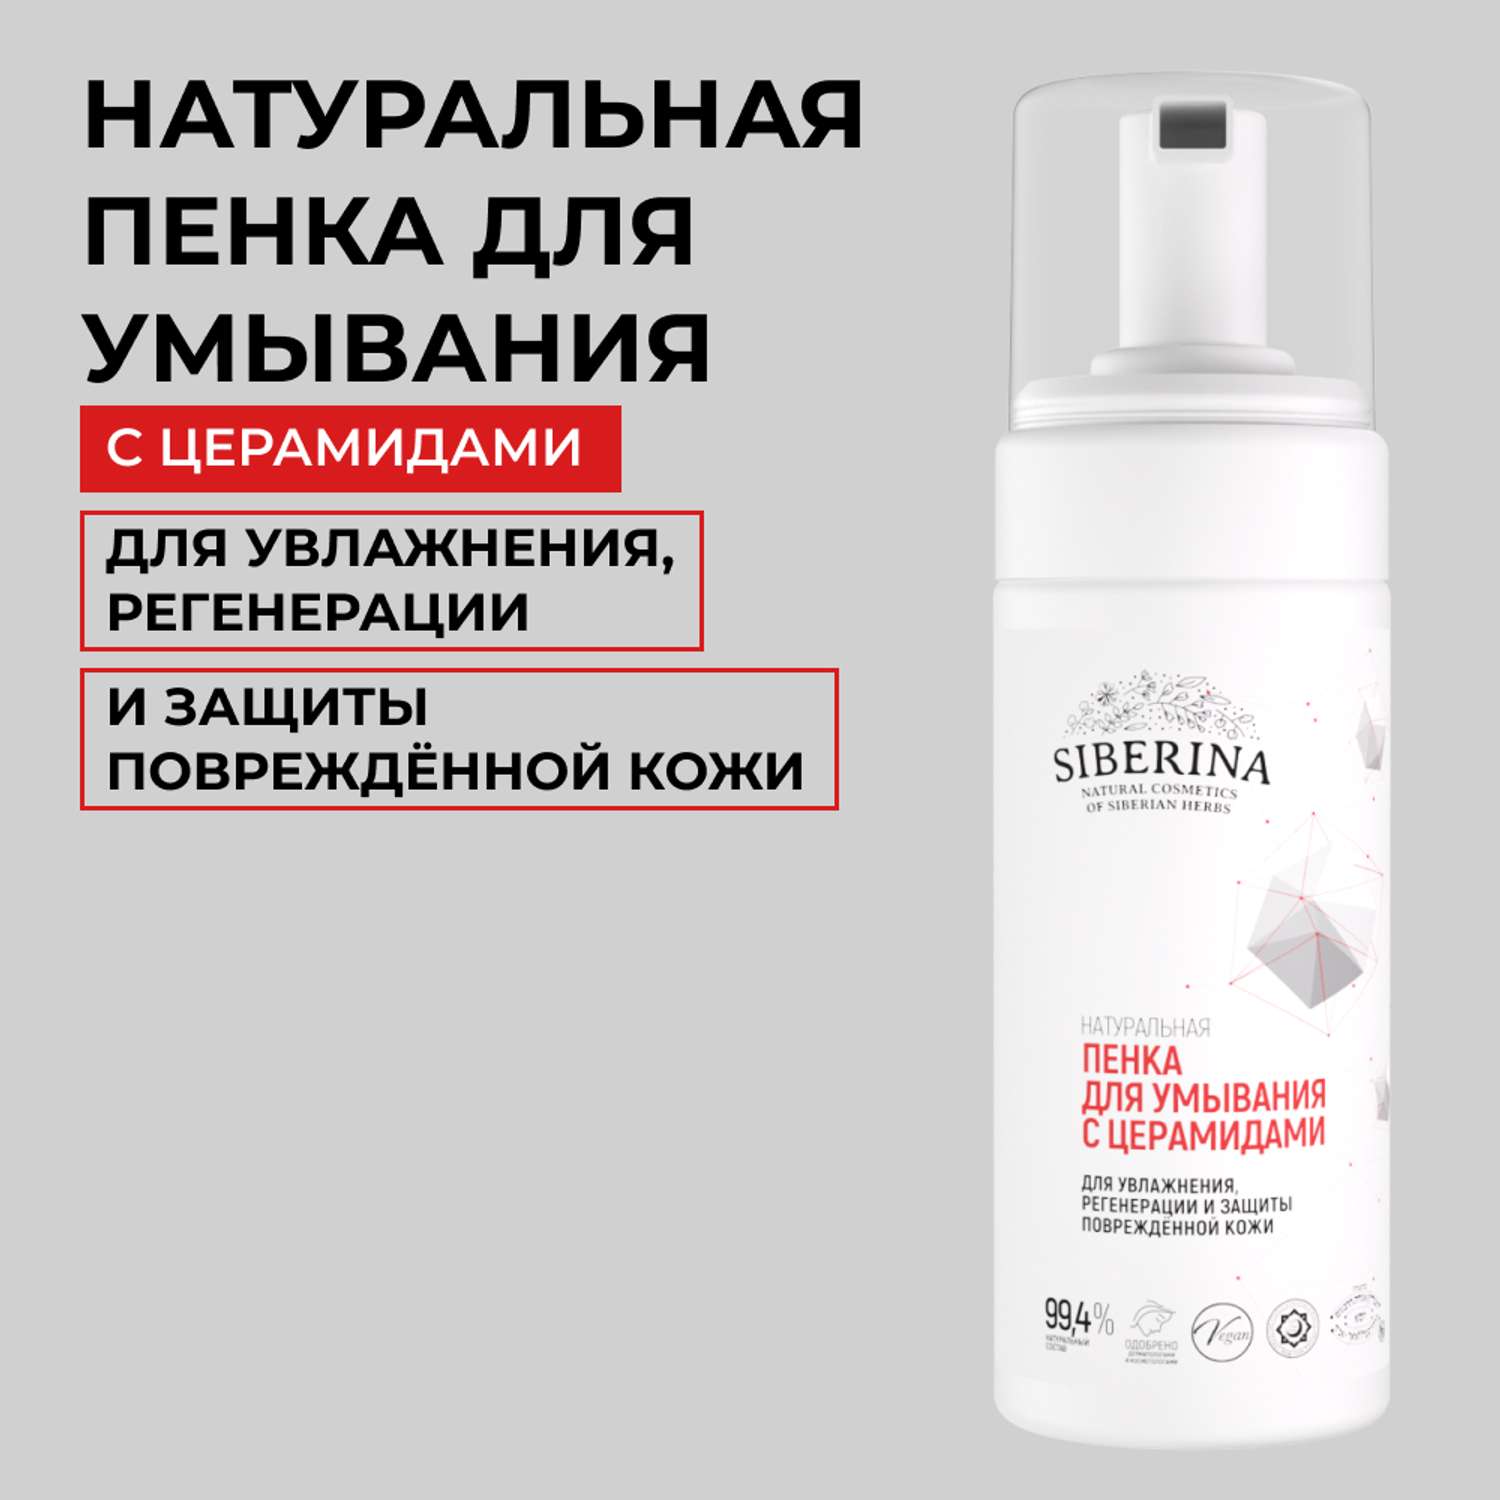 Пенка для умывания Siberina натуральная для увлажнения регенерации и защиты повреждённой кожи с церамидами 150 мл - фото 1